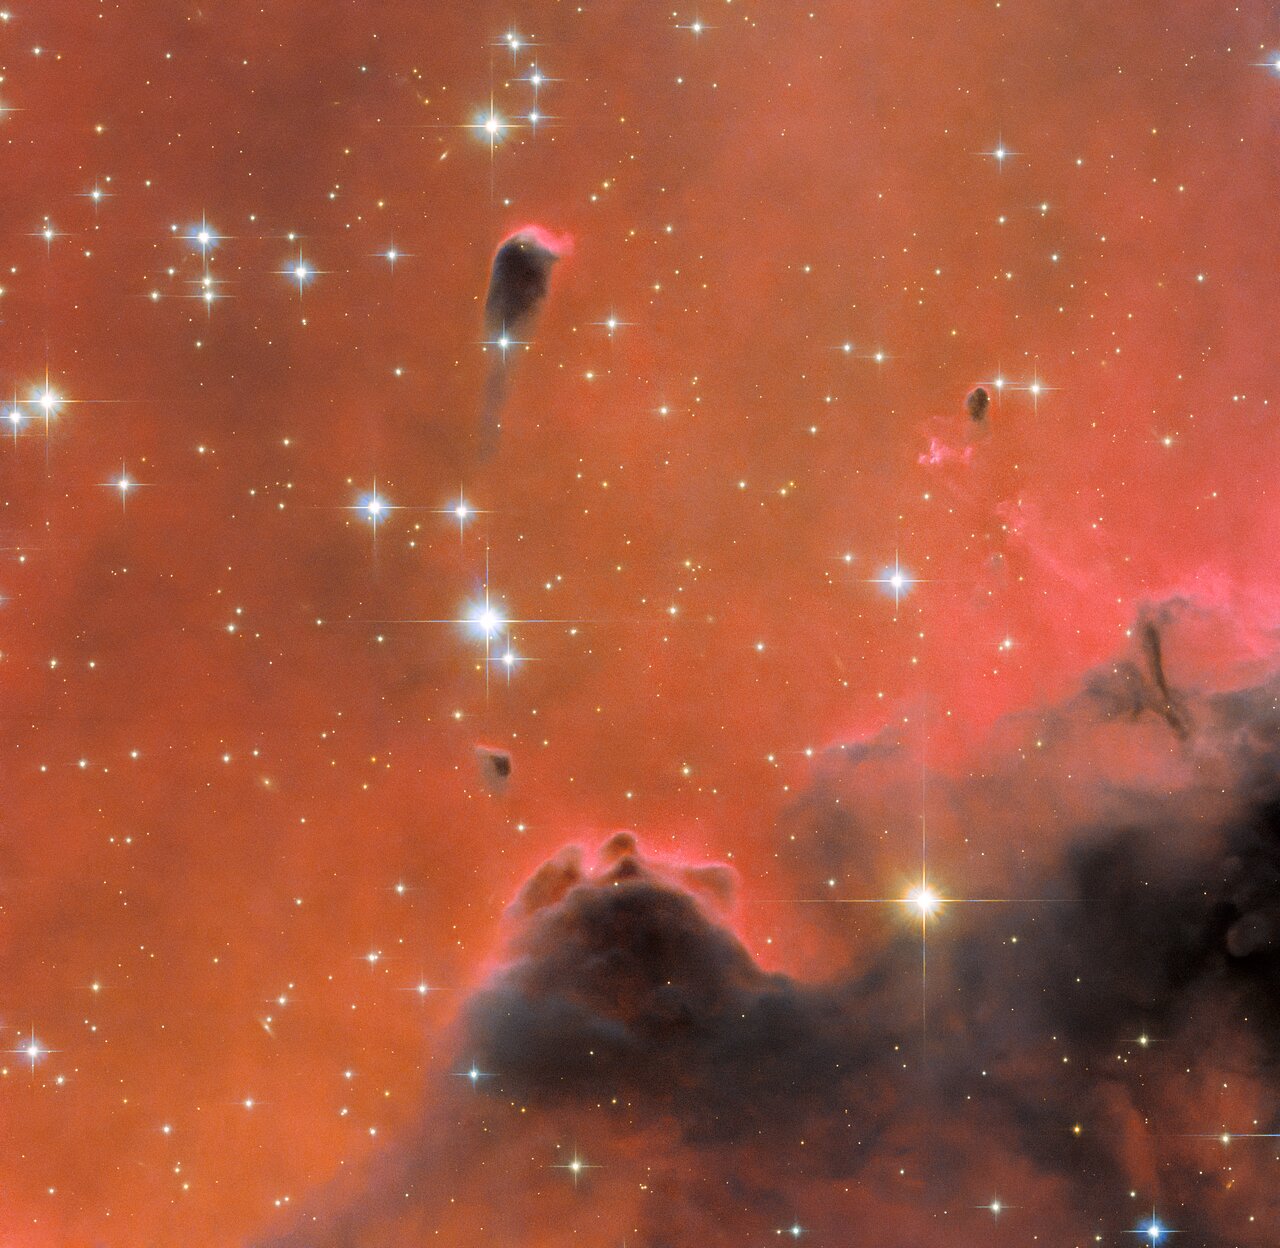 哈勃太空望远镜捕捉到灵魂星云令人惊叹的红色景象